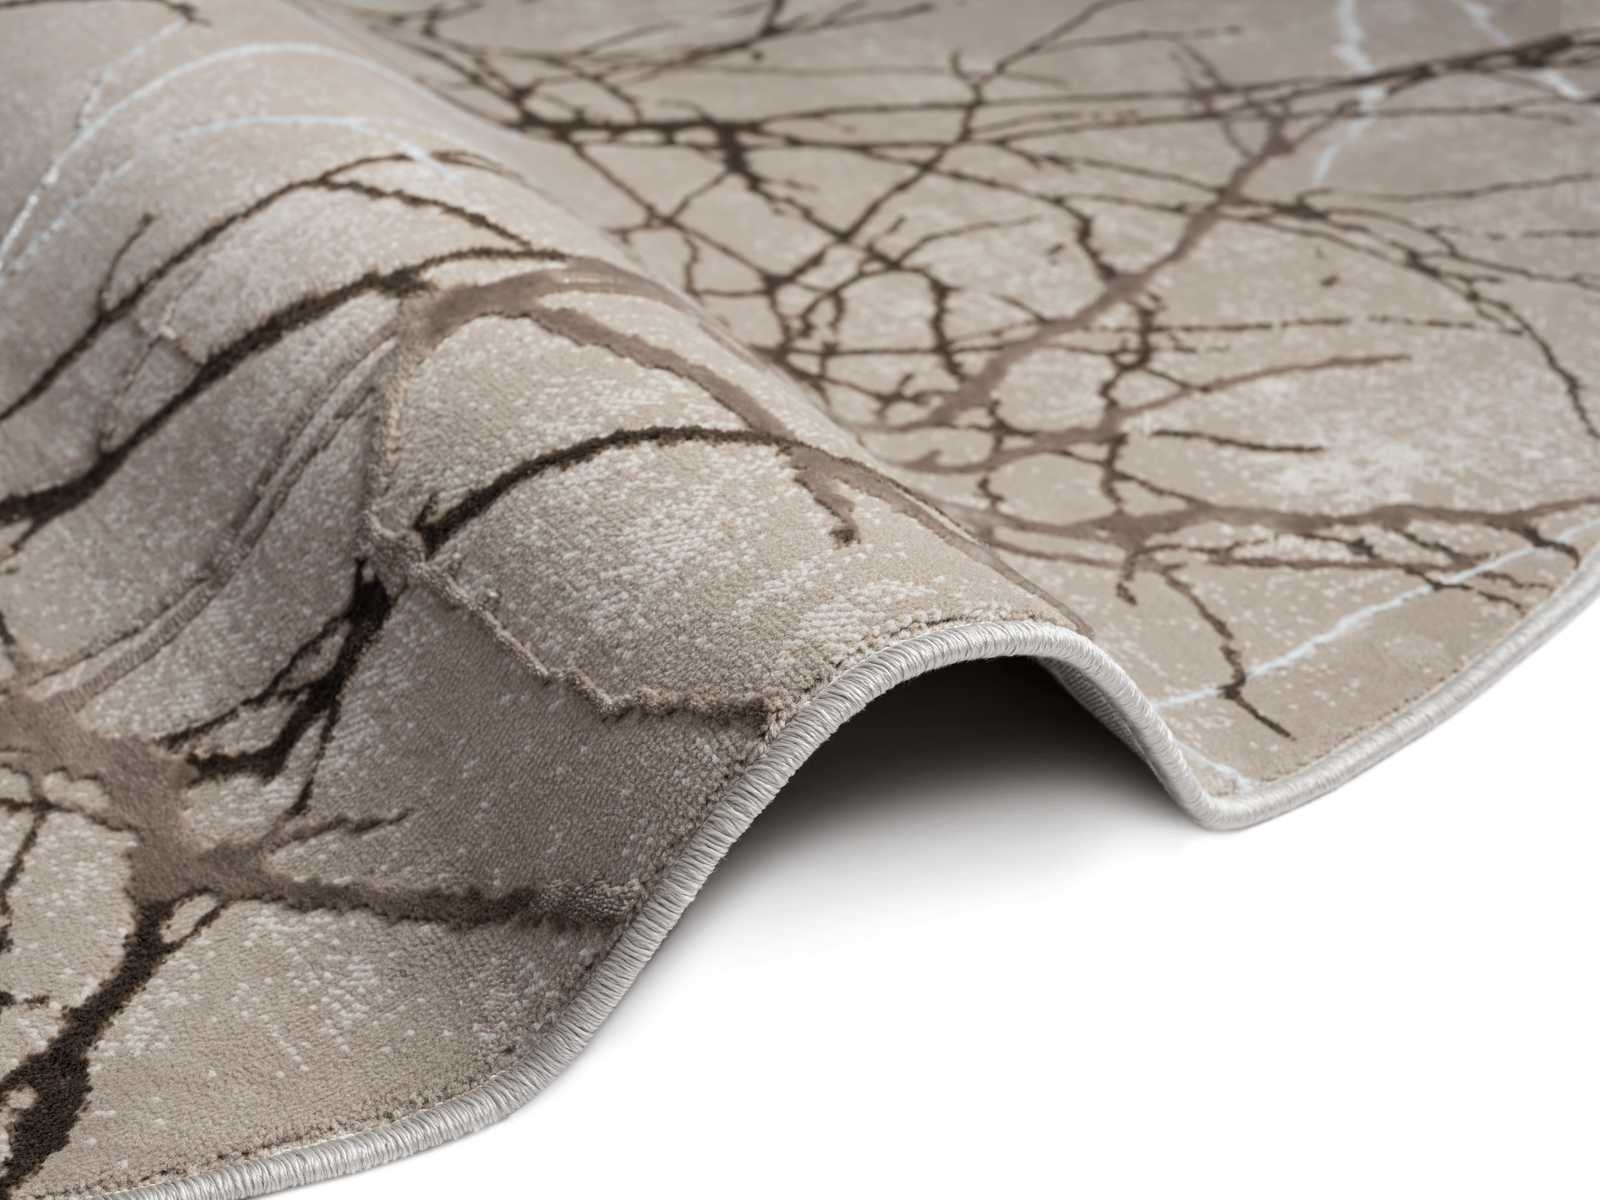             Hochflor Teppich in zarten Beige – 200 x 140 cm
        